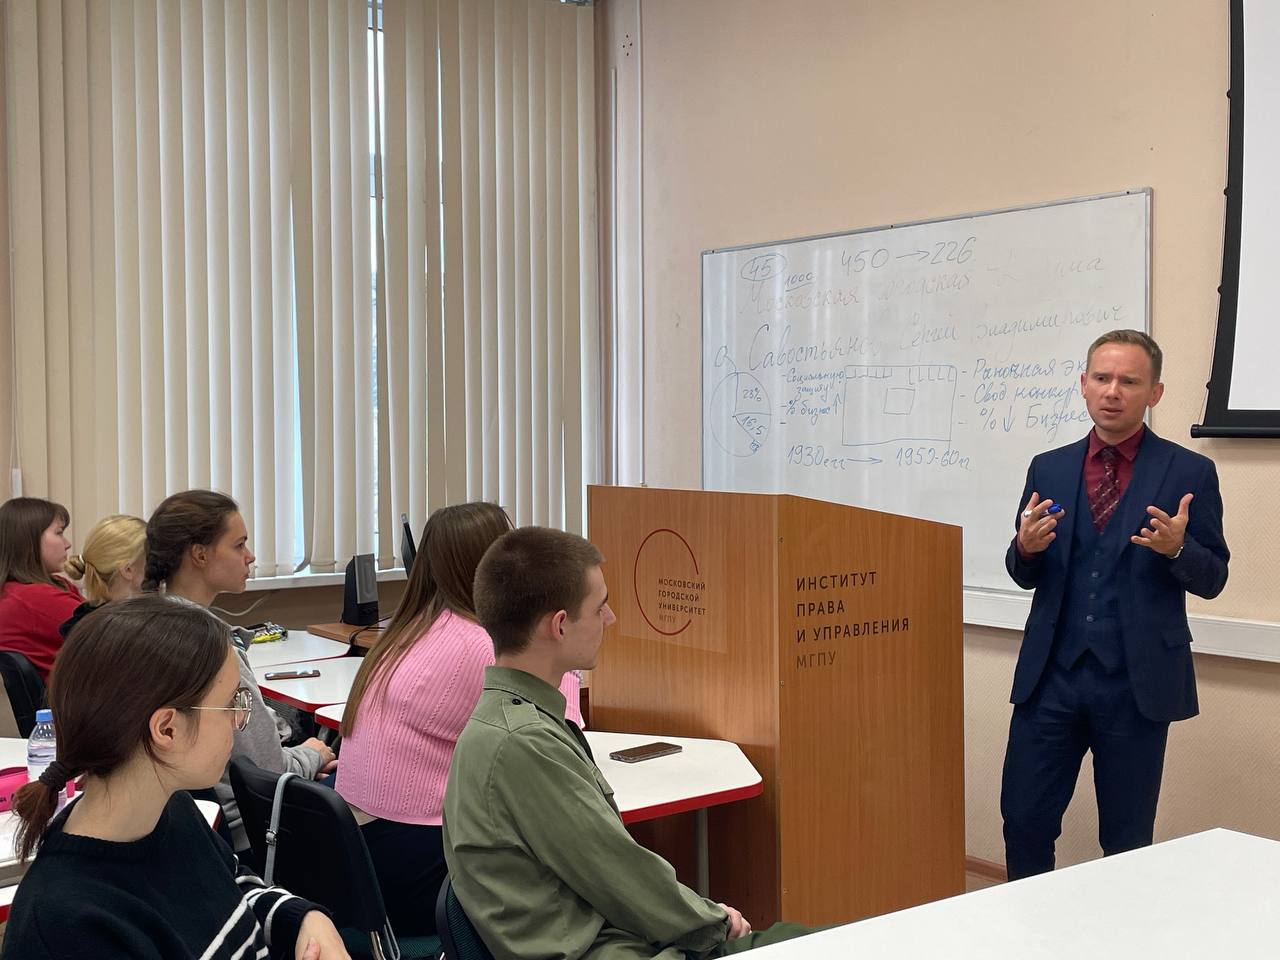 Провёл лекцию для студентов факультета Государственного и муниципального управления Московского городского университета (МГПУ).